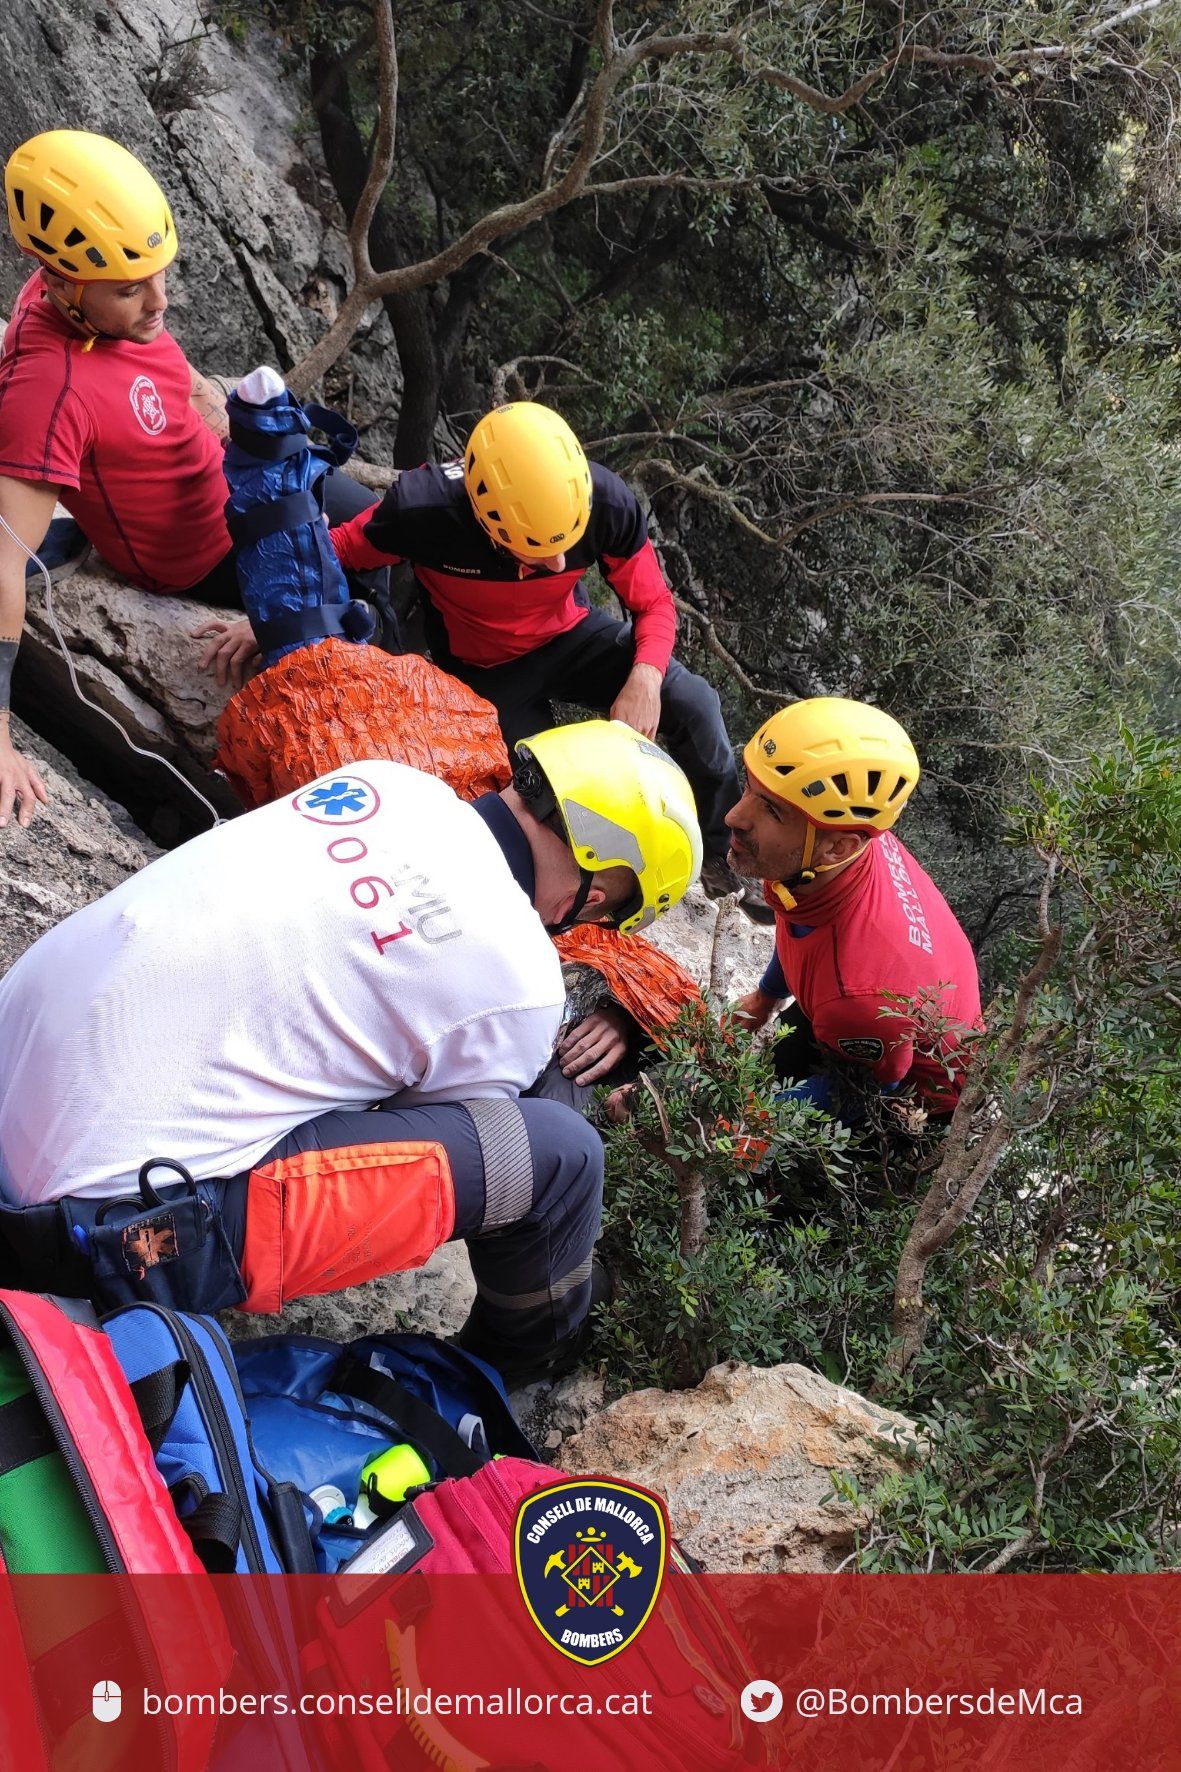 Rescate de un bombero lesionado cuando practicaba escalada